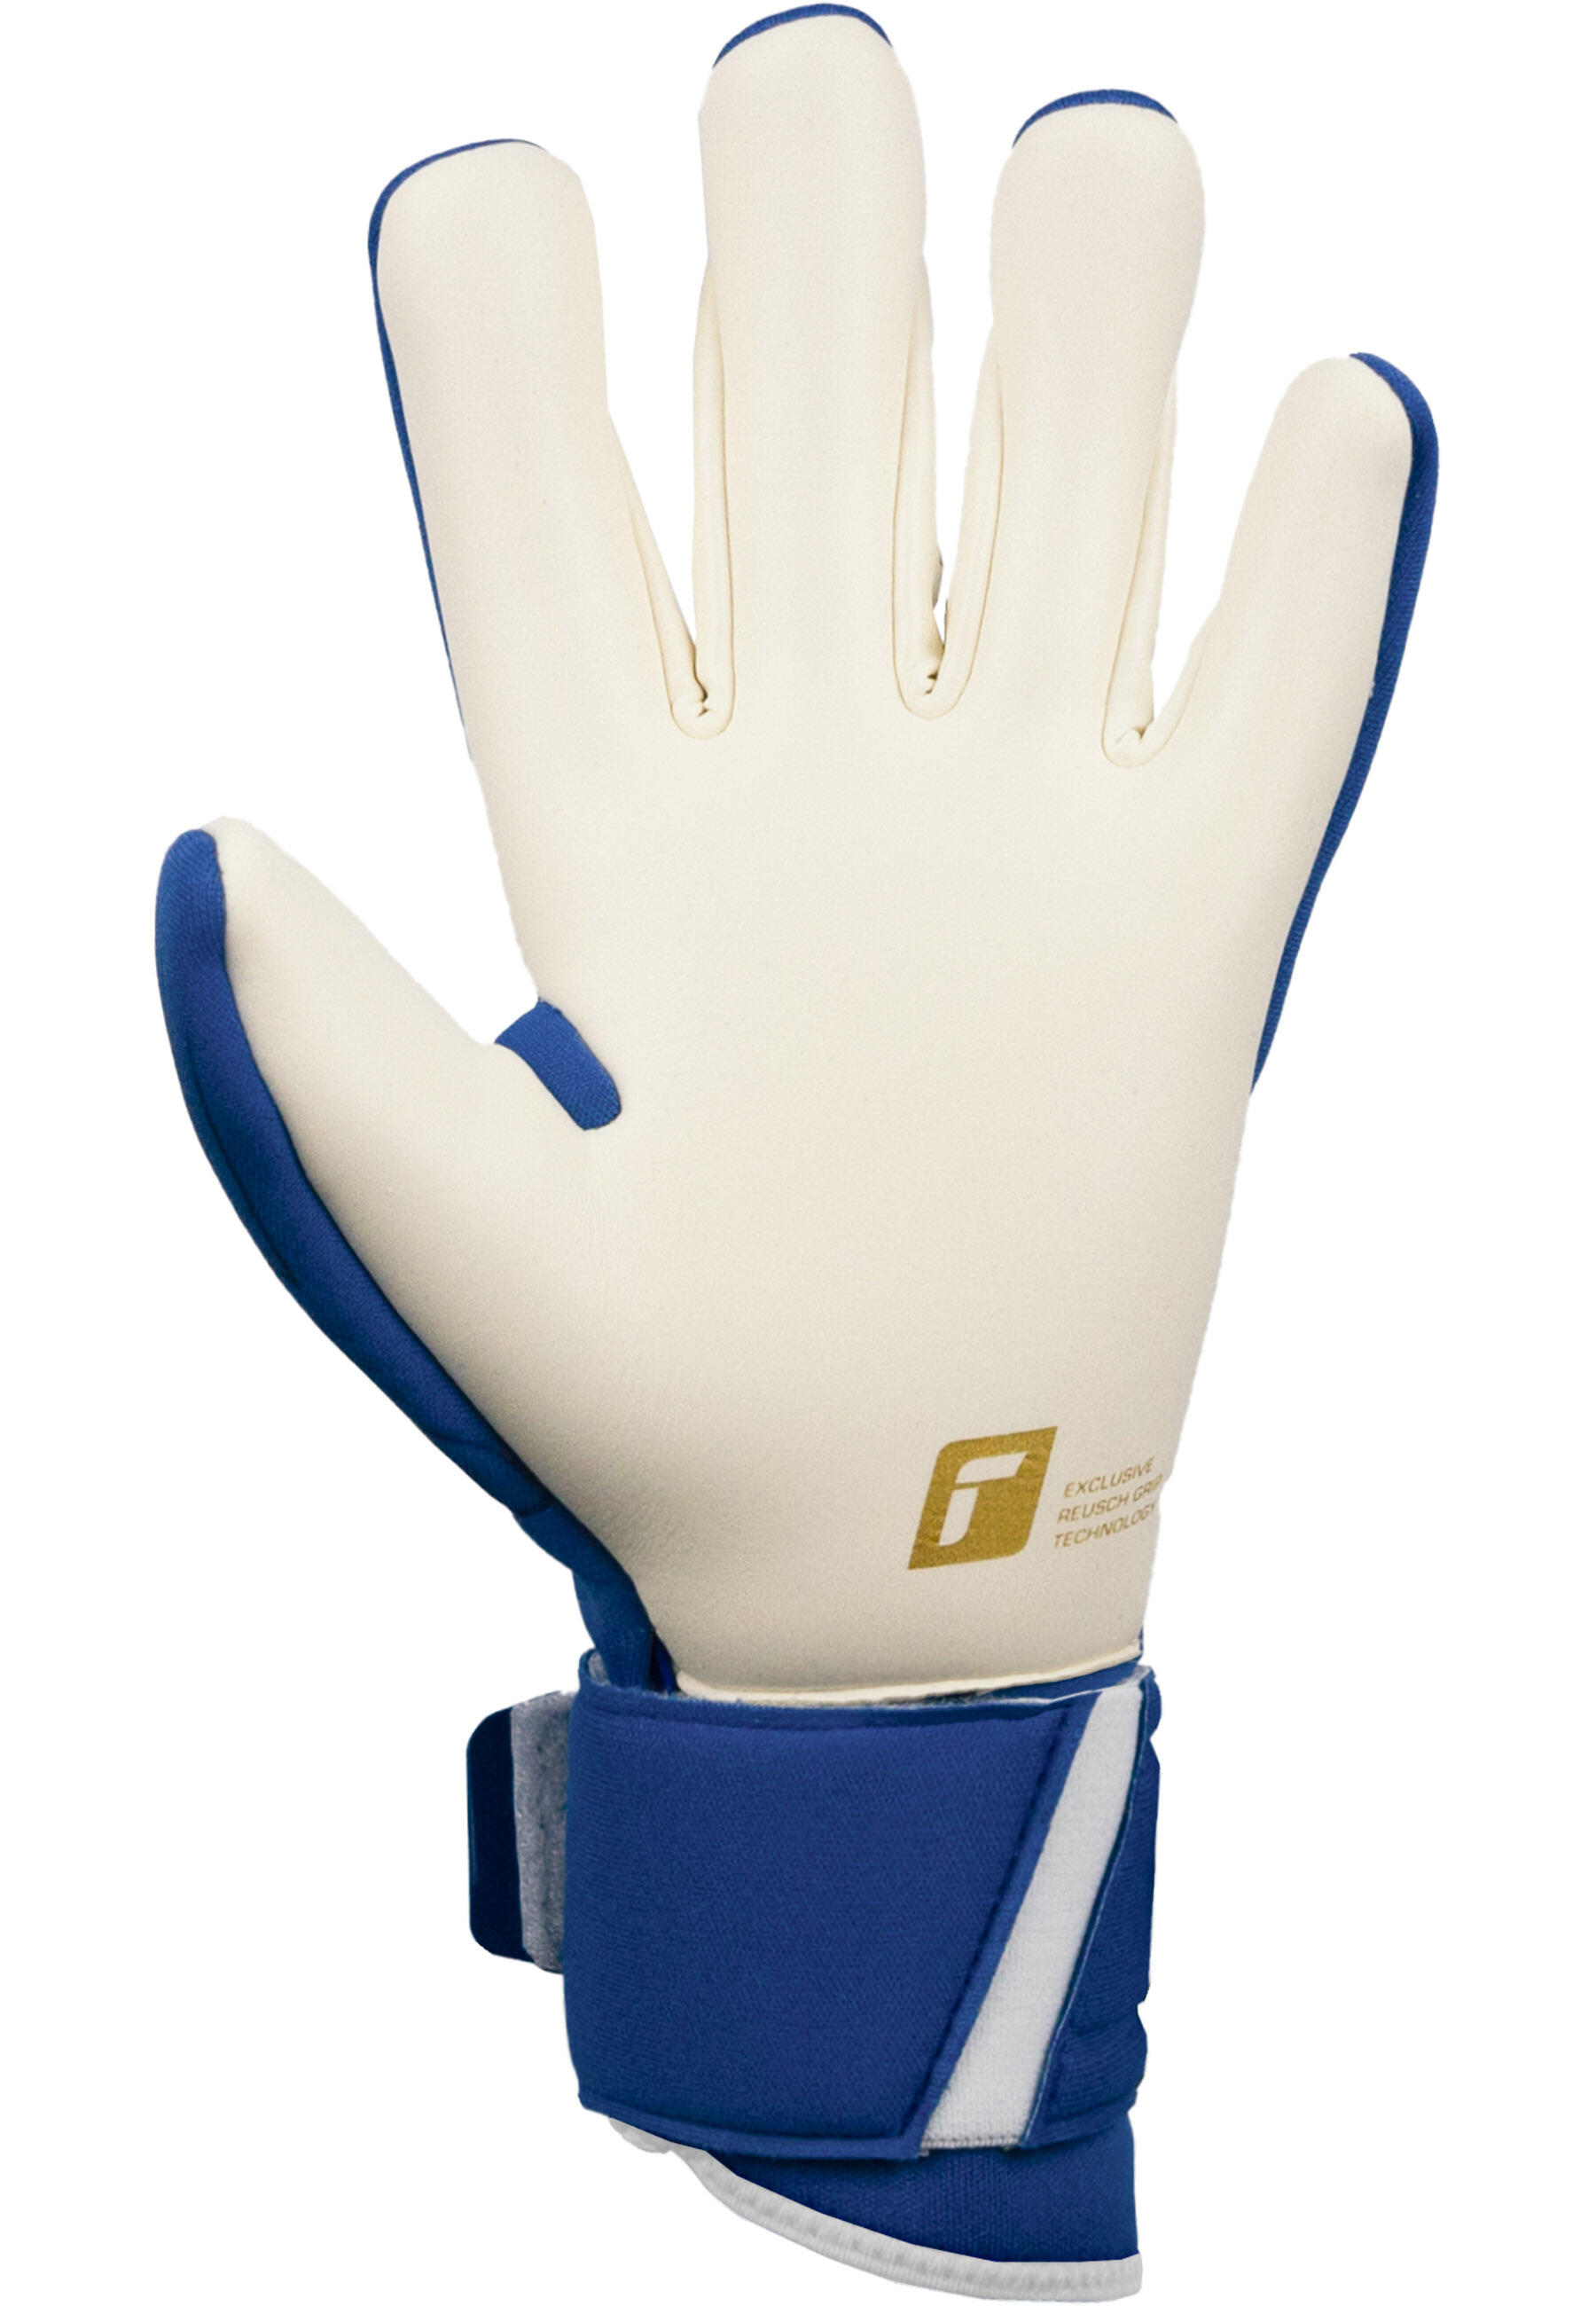 Reusch Arrow Gold X Goalkeeper Gloves 4/5